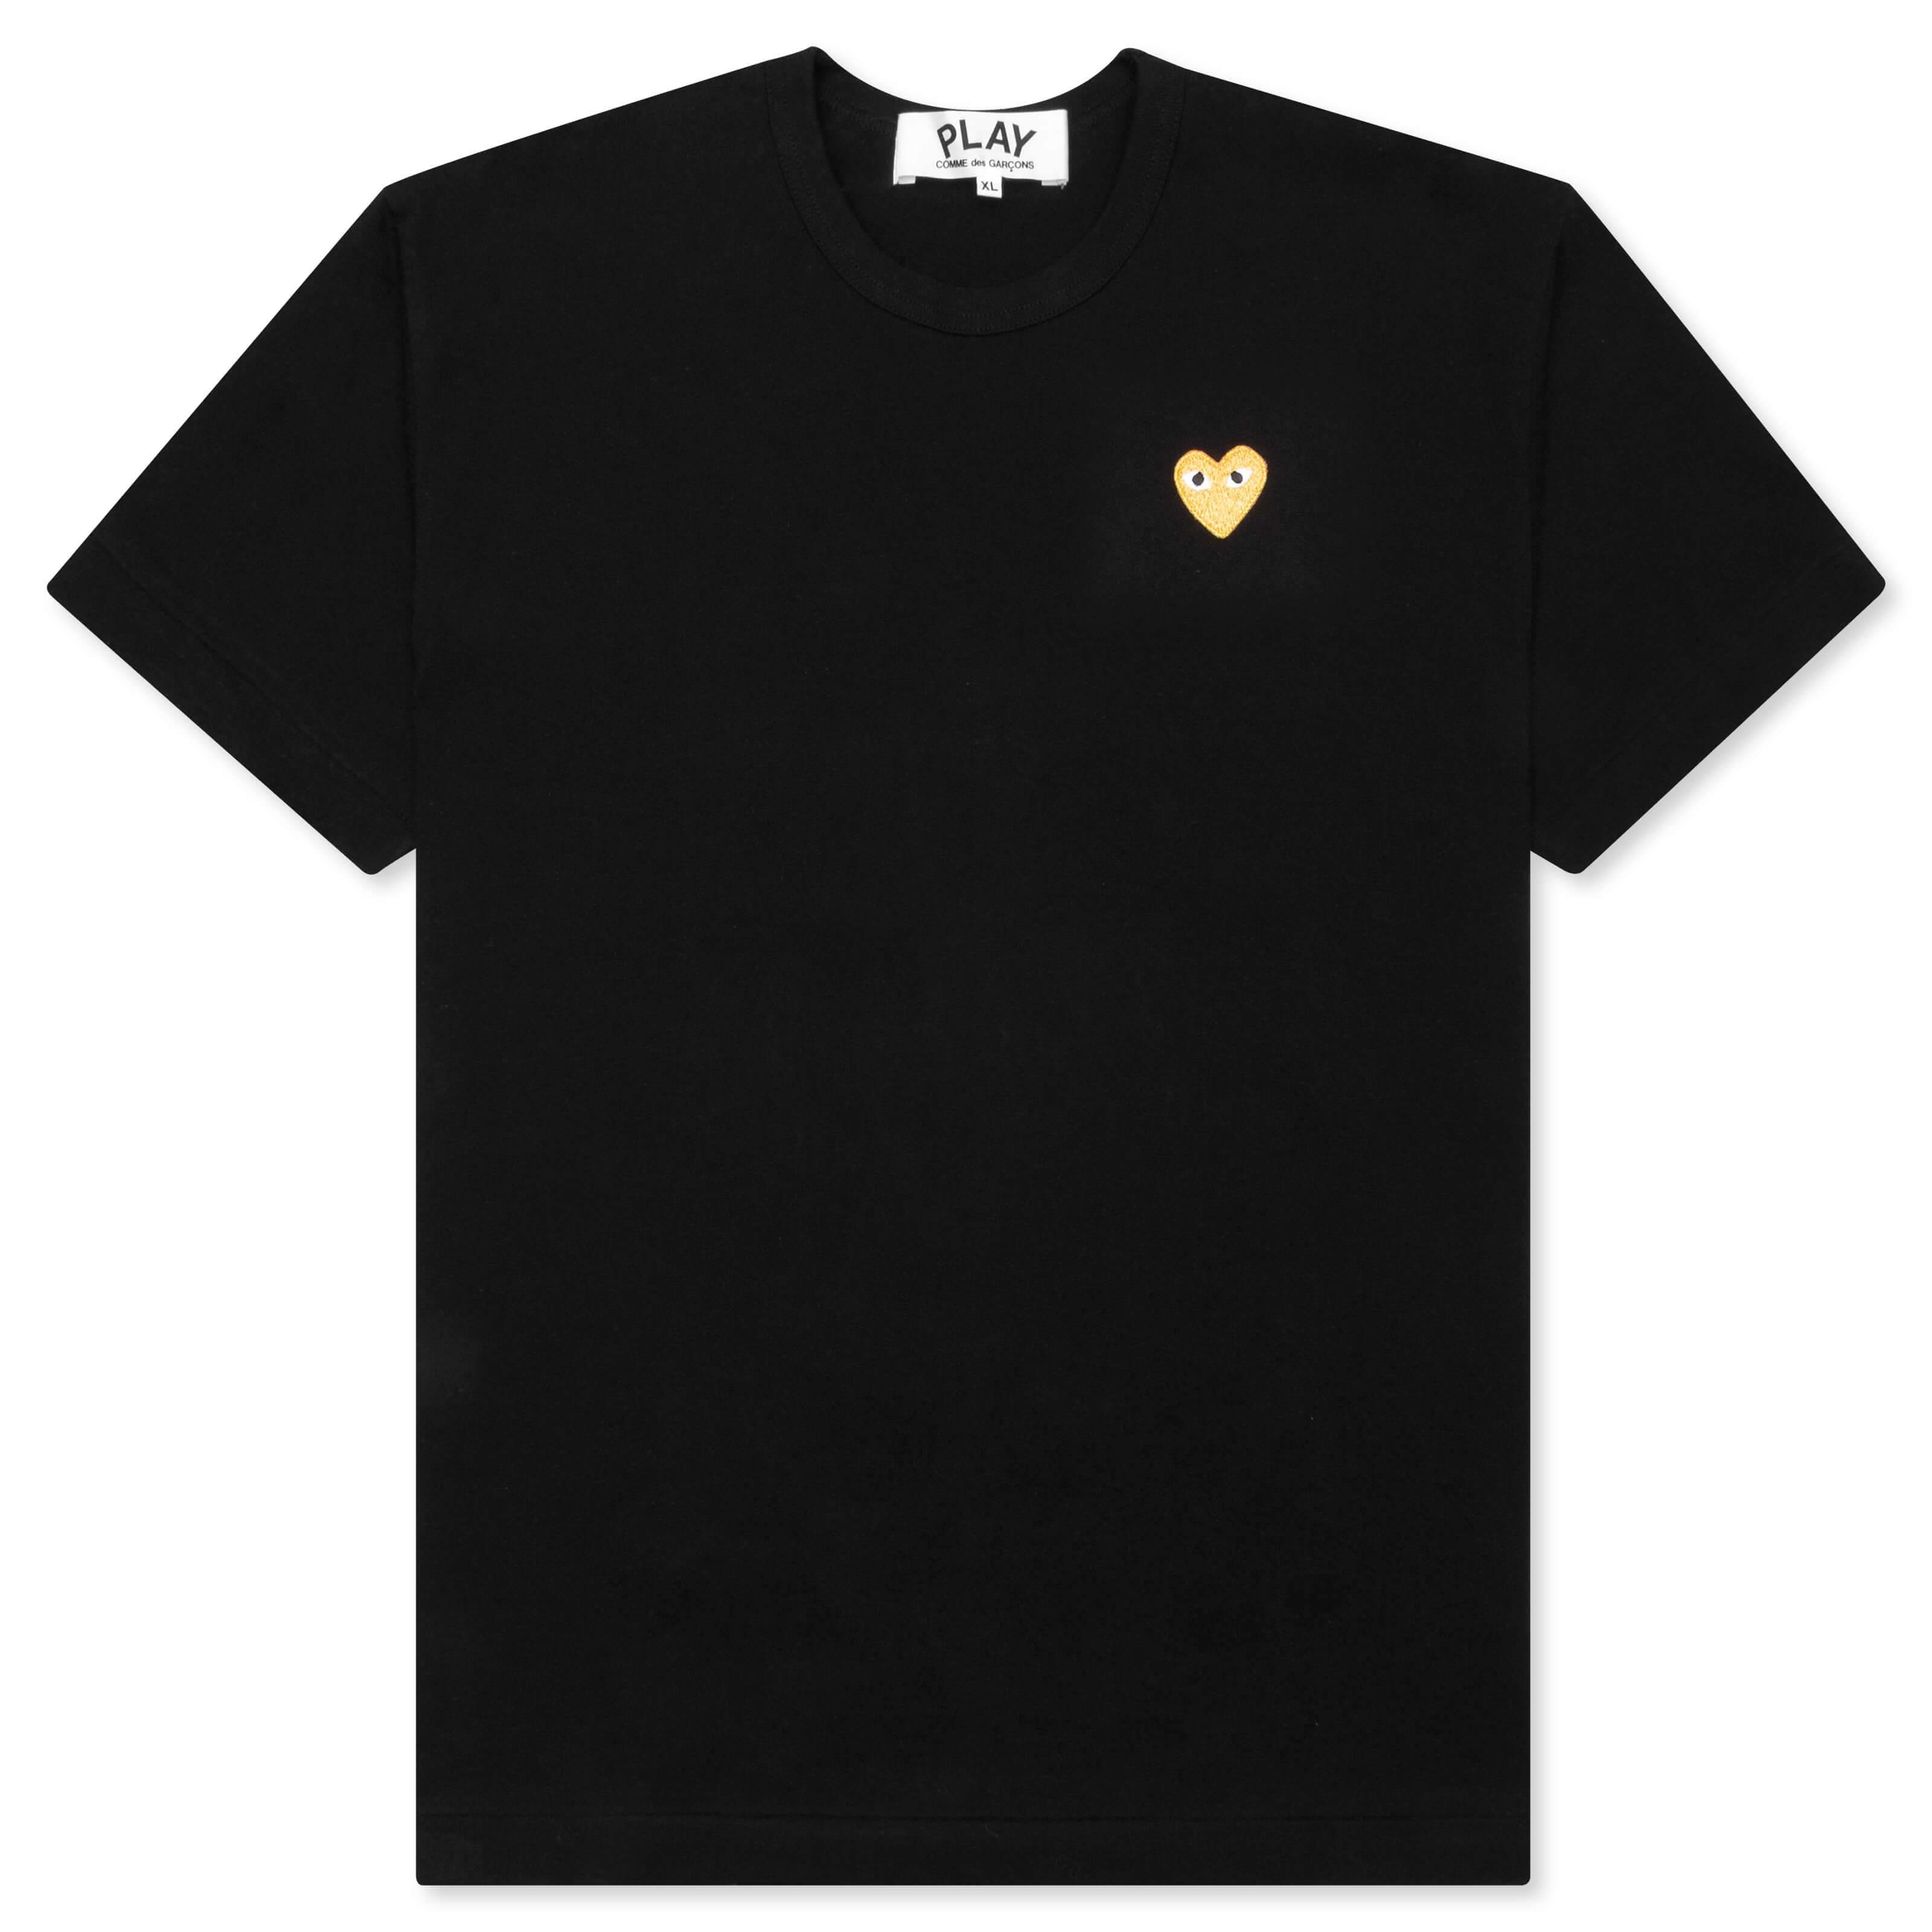 Gold Heart T-Shirt - Black – Feature